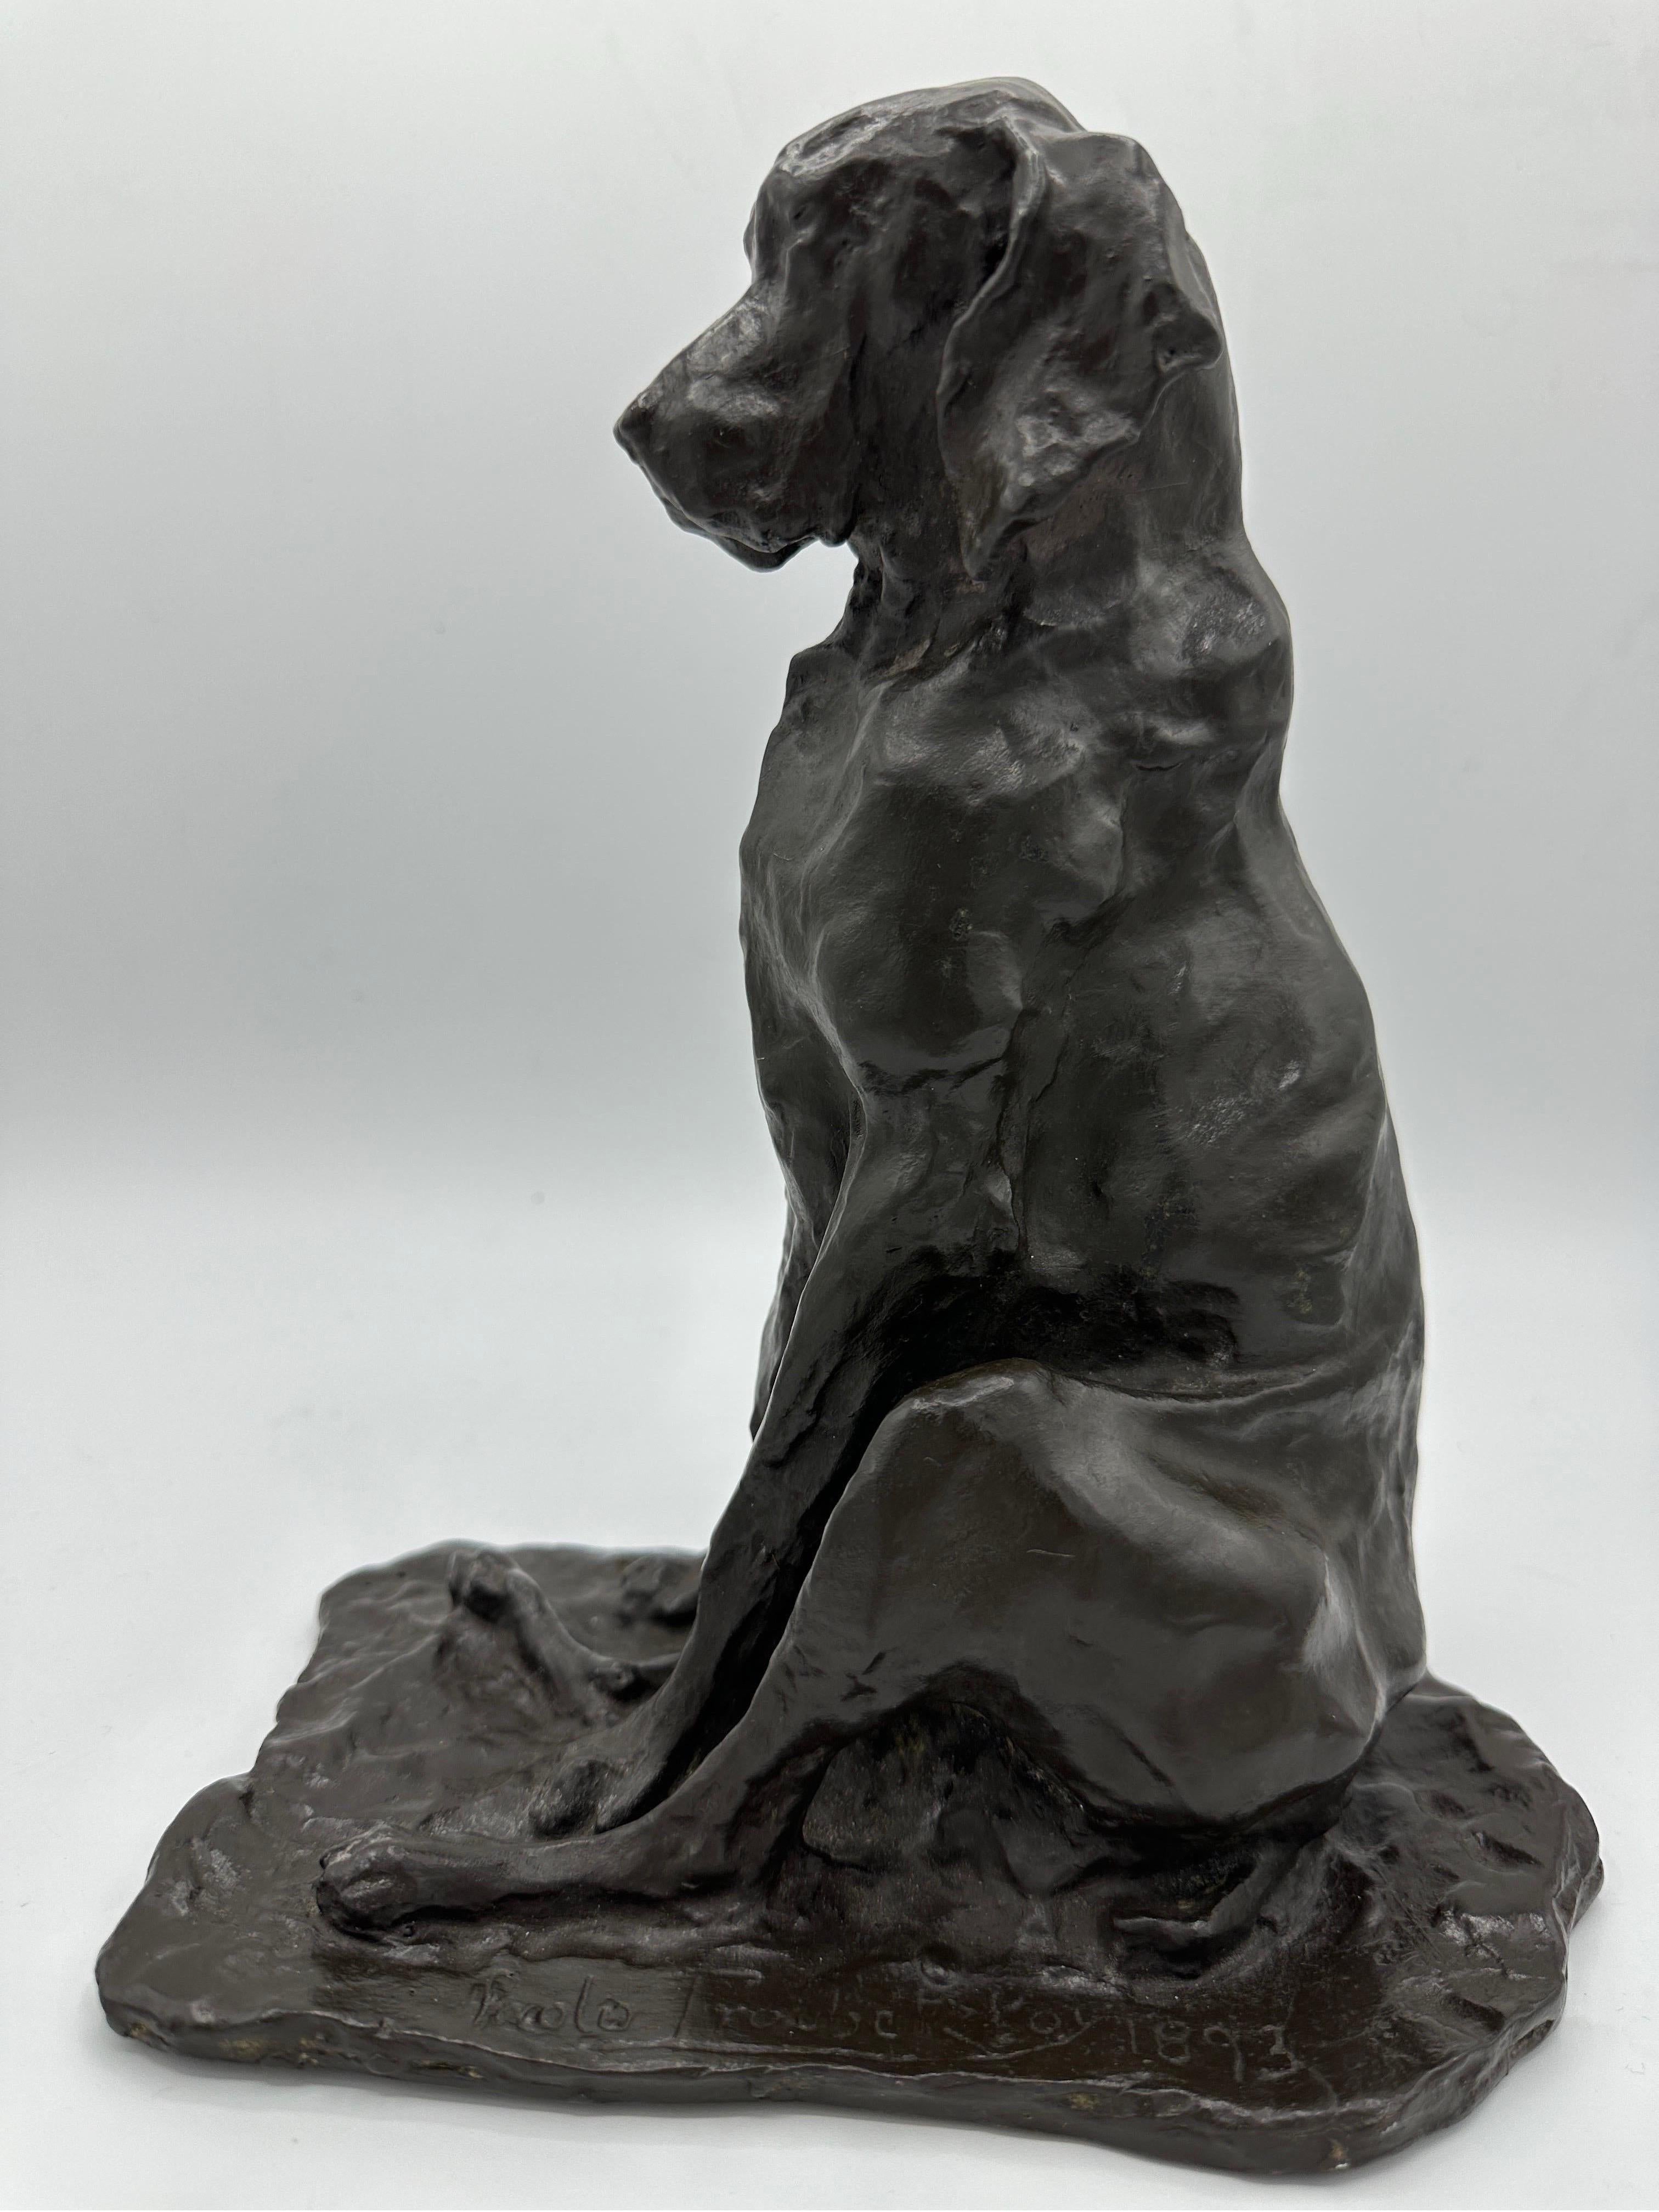 Prince Paul Troubetzkoy Figurative Sculpture – Eine Tierfigur eines sitzenden Hundes aus Bronze des späten 19. Jahrhunderts